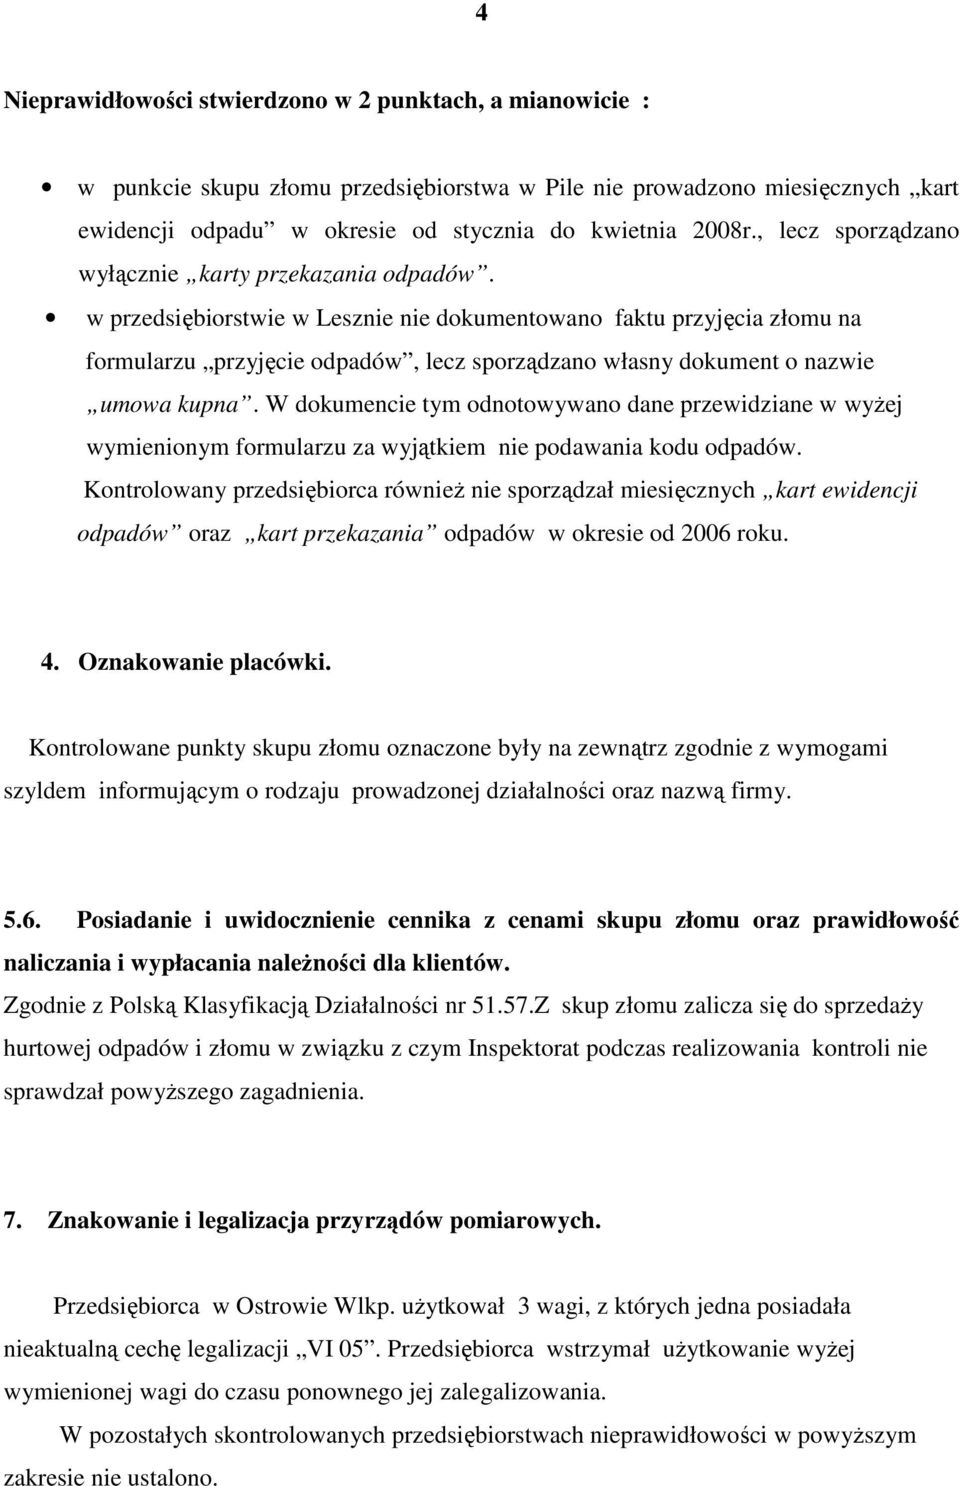 w przedsiębiorstwie w Lesznie nie dokumentowano faktu przyjęcia złomu na formularzu przyjęcie odpadów, lecz sporządzano własny dokument o nazwie umowa kupna.